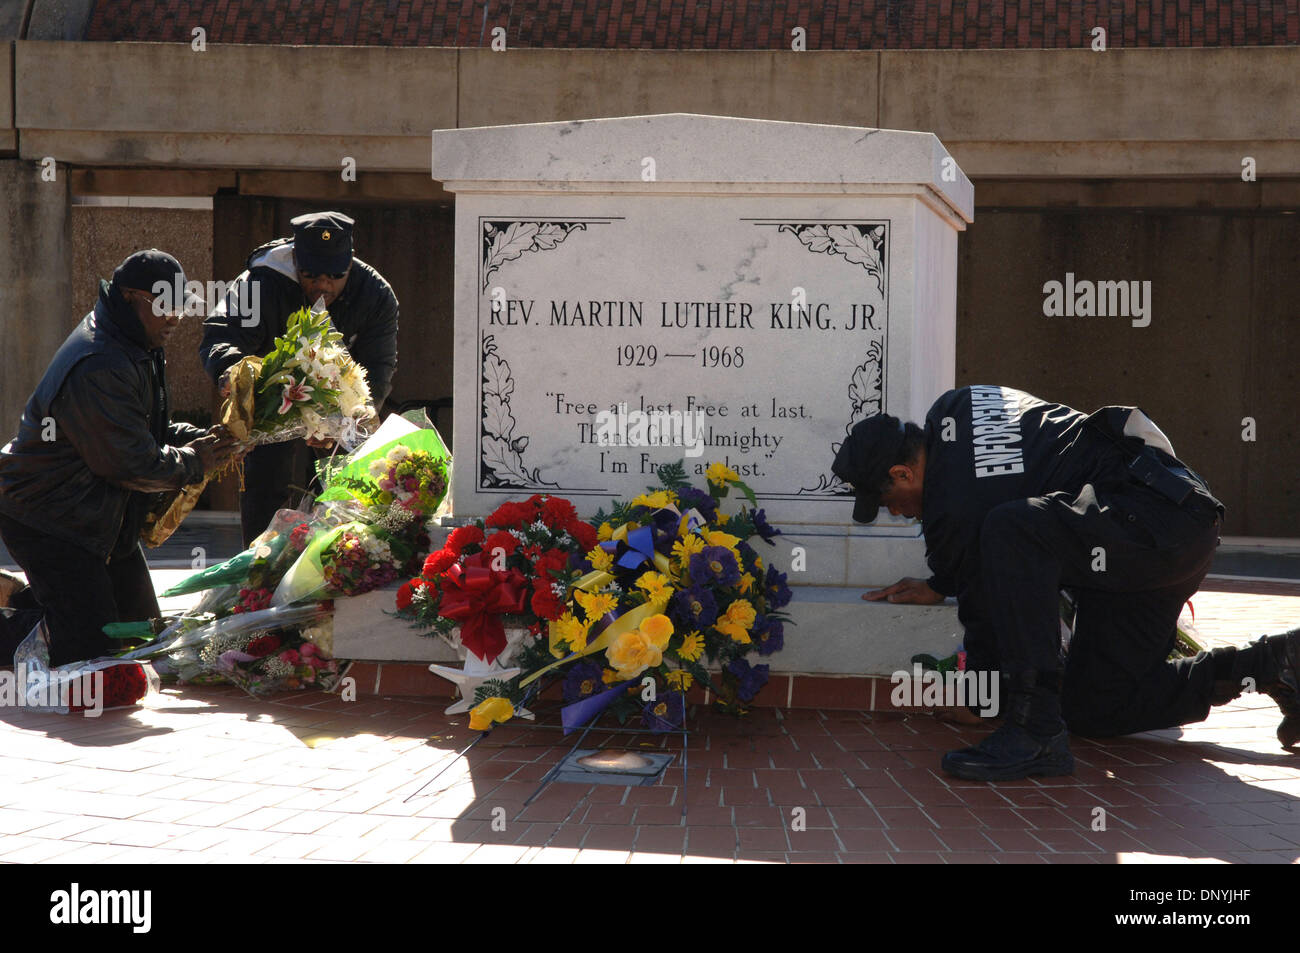 Jan 31, 2006 ; Atlanta, GA, USA ; les gardes de sécurité organiser des fleurs au tombeau MLK à Atlanta qui avaient été laissés en hommage à Coretta Scott King, qui est mort hier. C O R E T T A S C O T T K I N G ( A v r i l 2 7 1 9 2 7 , - J a n v i e r 3 0 , 2 0 0 6 ) e t s h e w i f e o f t h e s l a i n c i v i l i t s r gh a c t i v i s t m a r t i n l u t h e r Banque D'Images